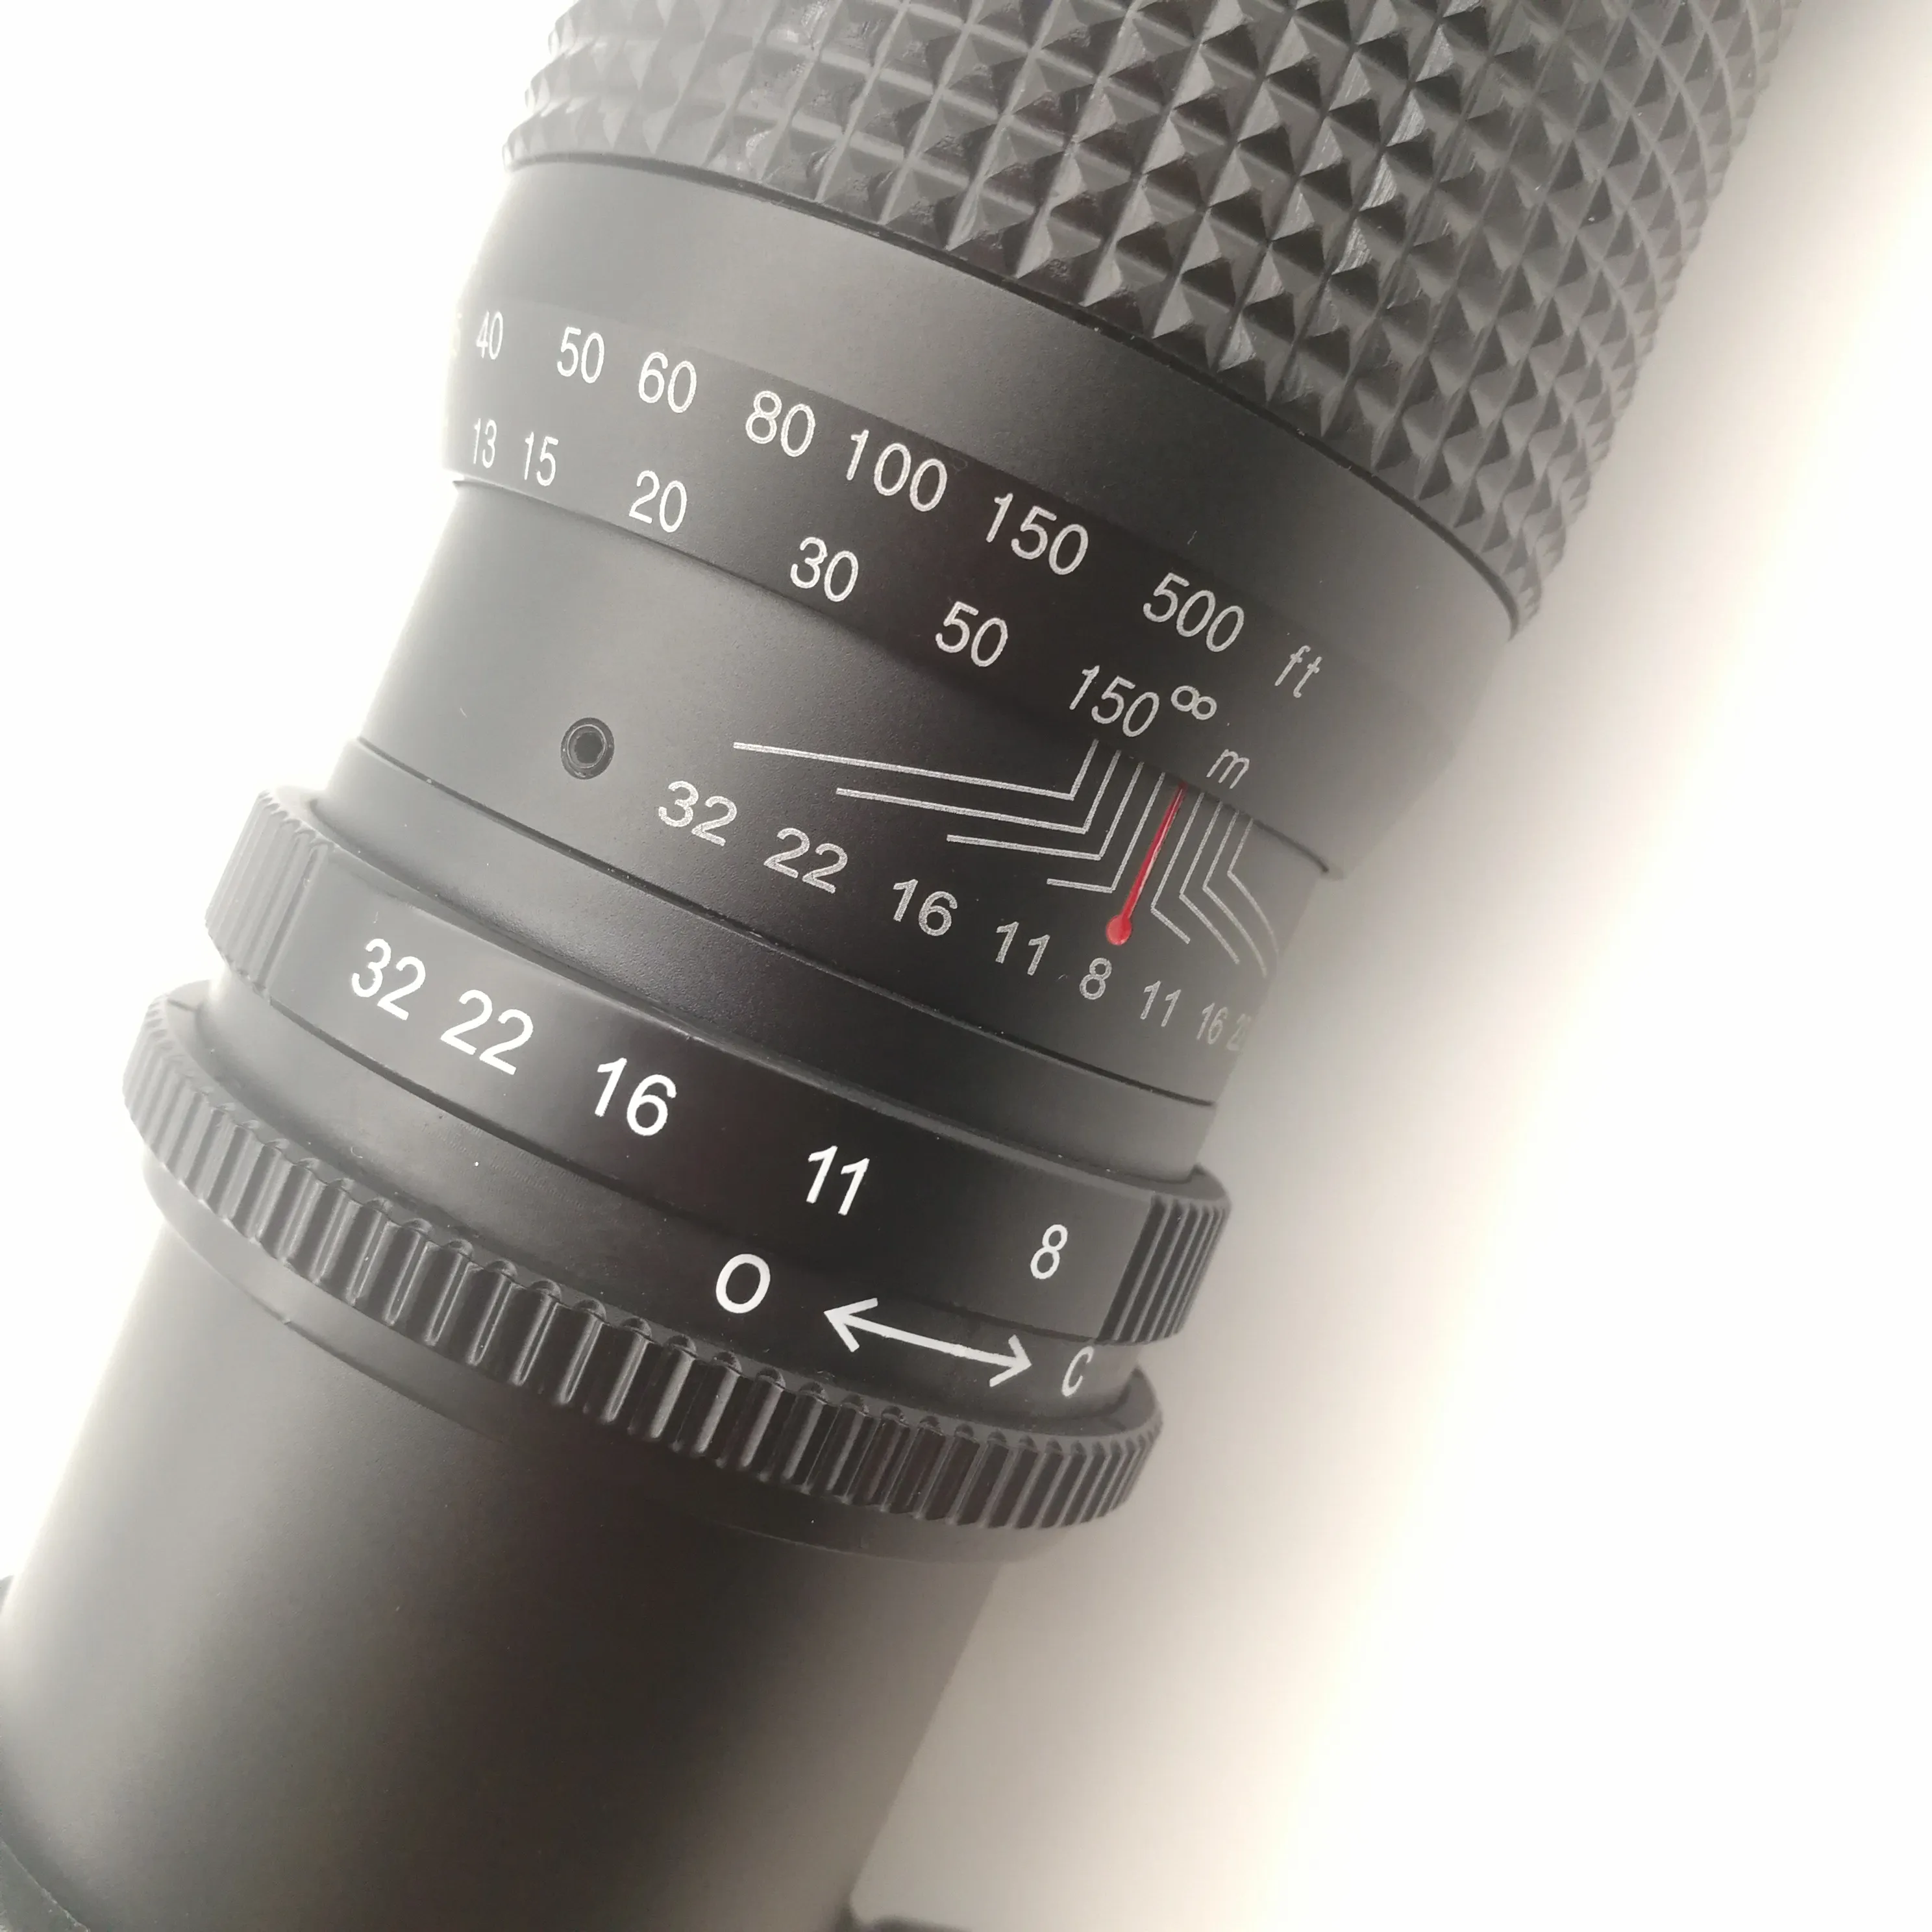 500mm F/8.0 haute définition super zoom objectif téléobjectif pour Nikon dslr D5500 D3300 D3200 D5300 convient à tous les appareils photo